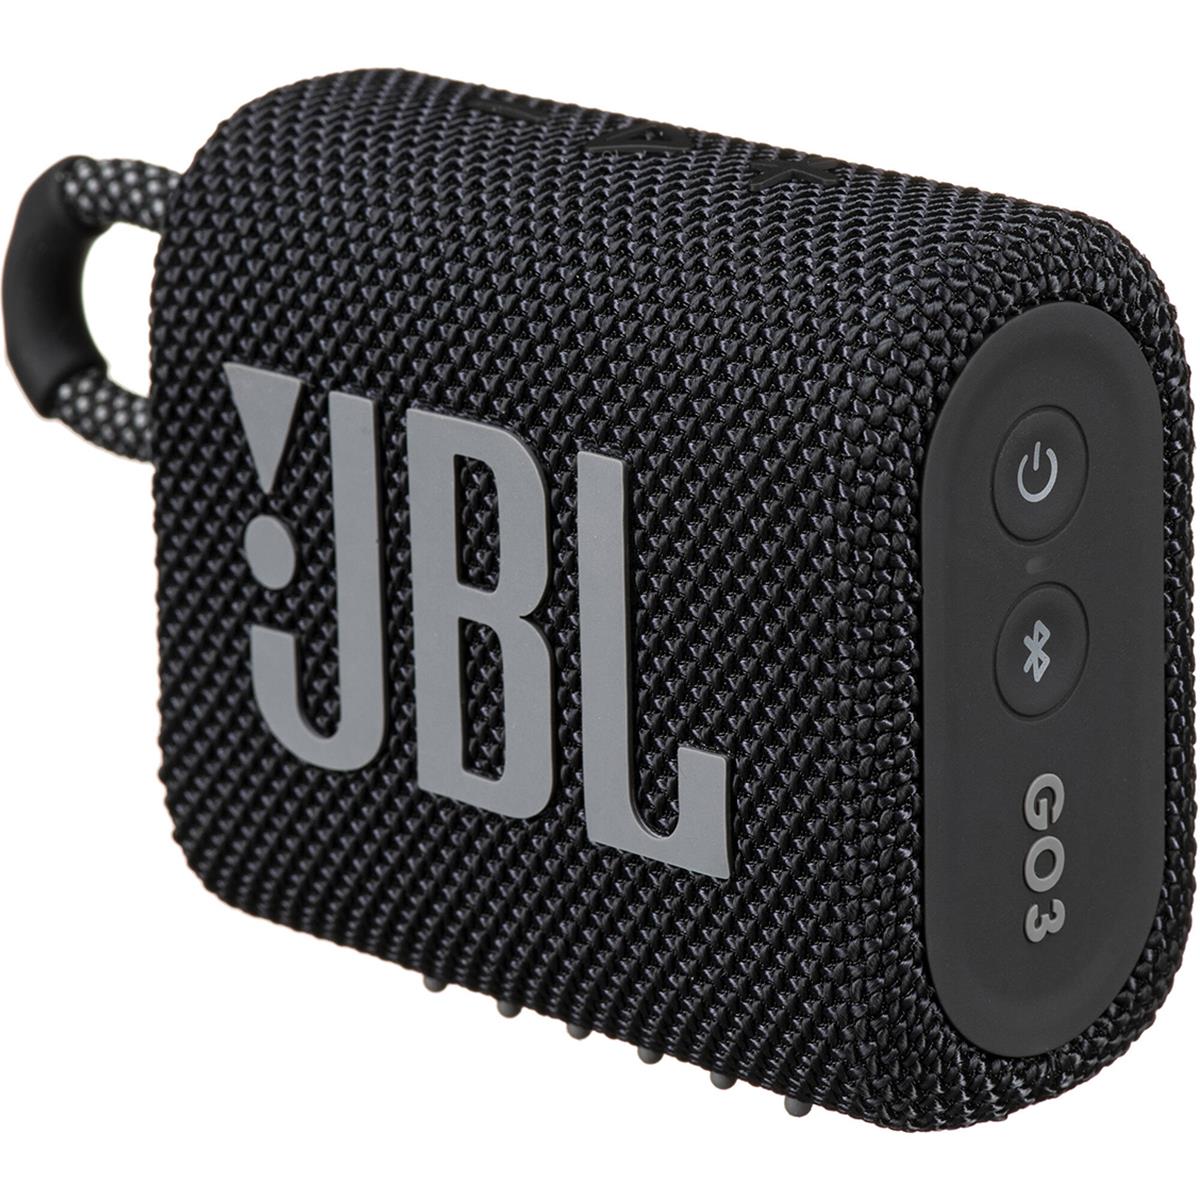 Image of JBL Go 3 Waterproof Portable Bluetooth Speaker Black